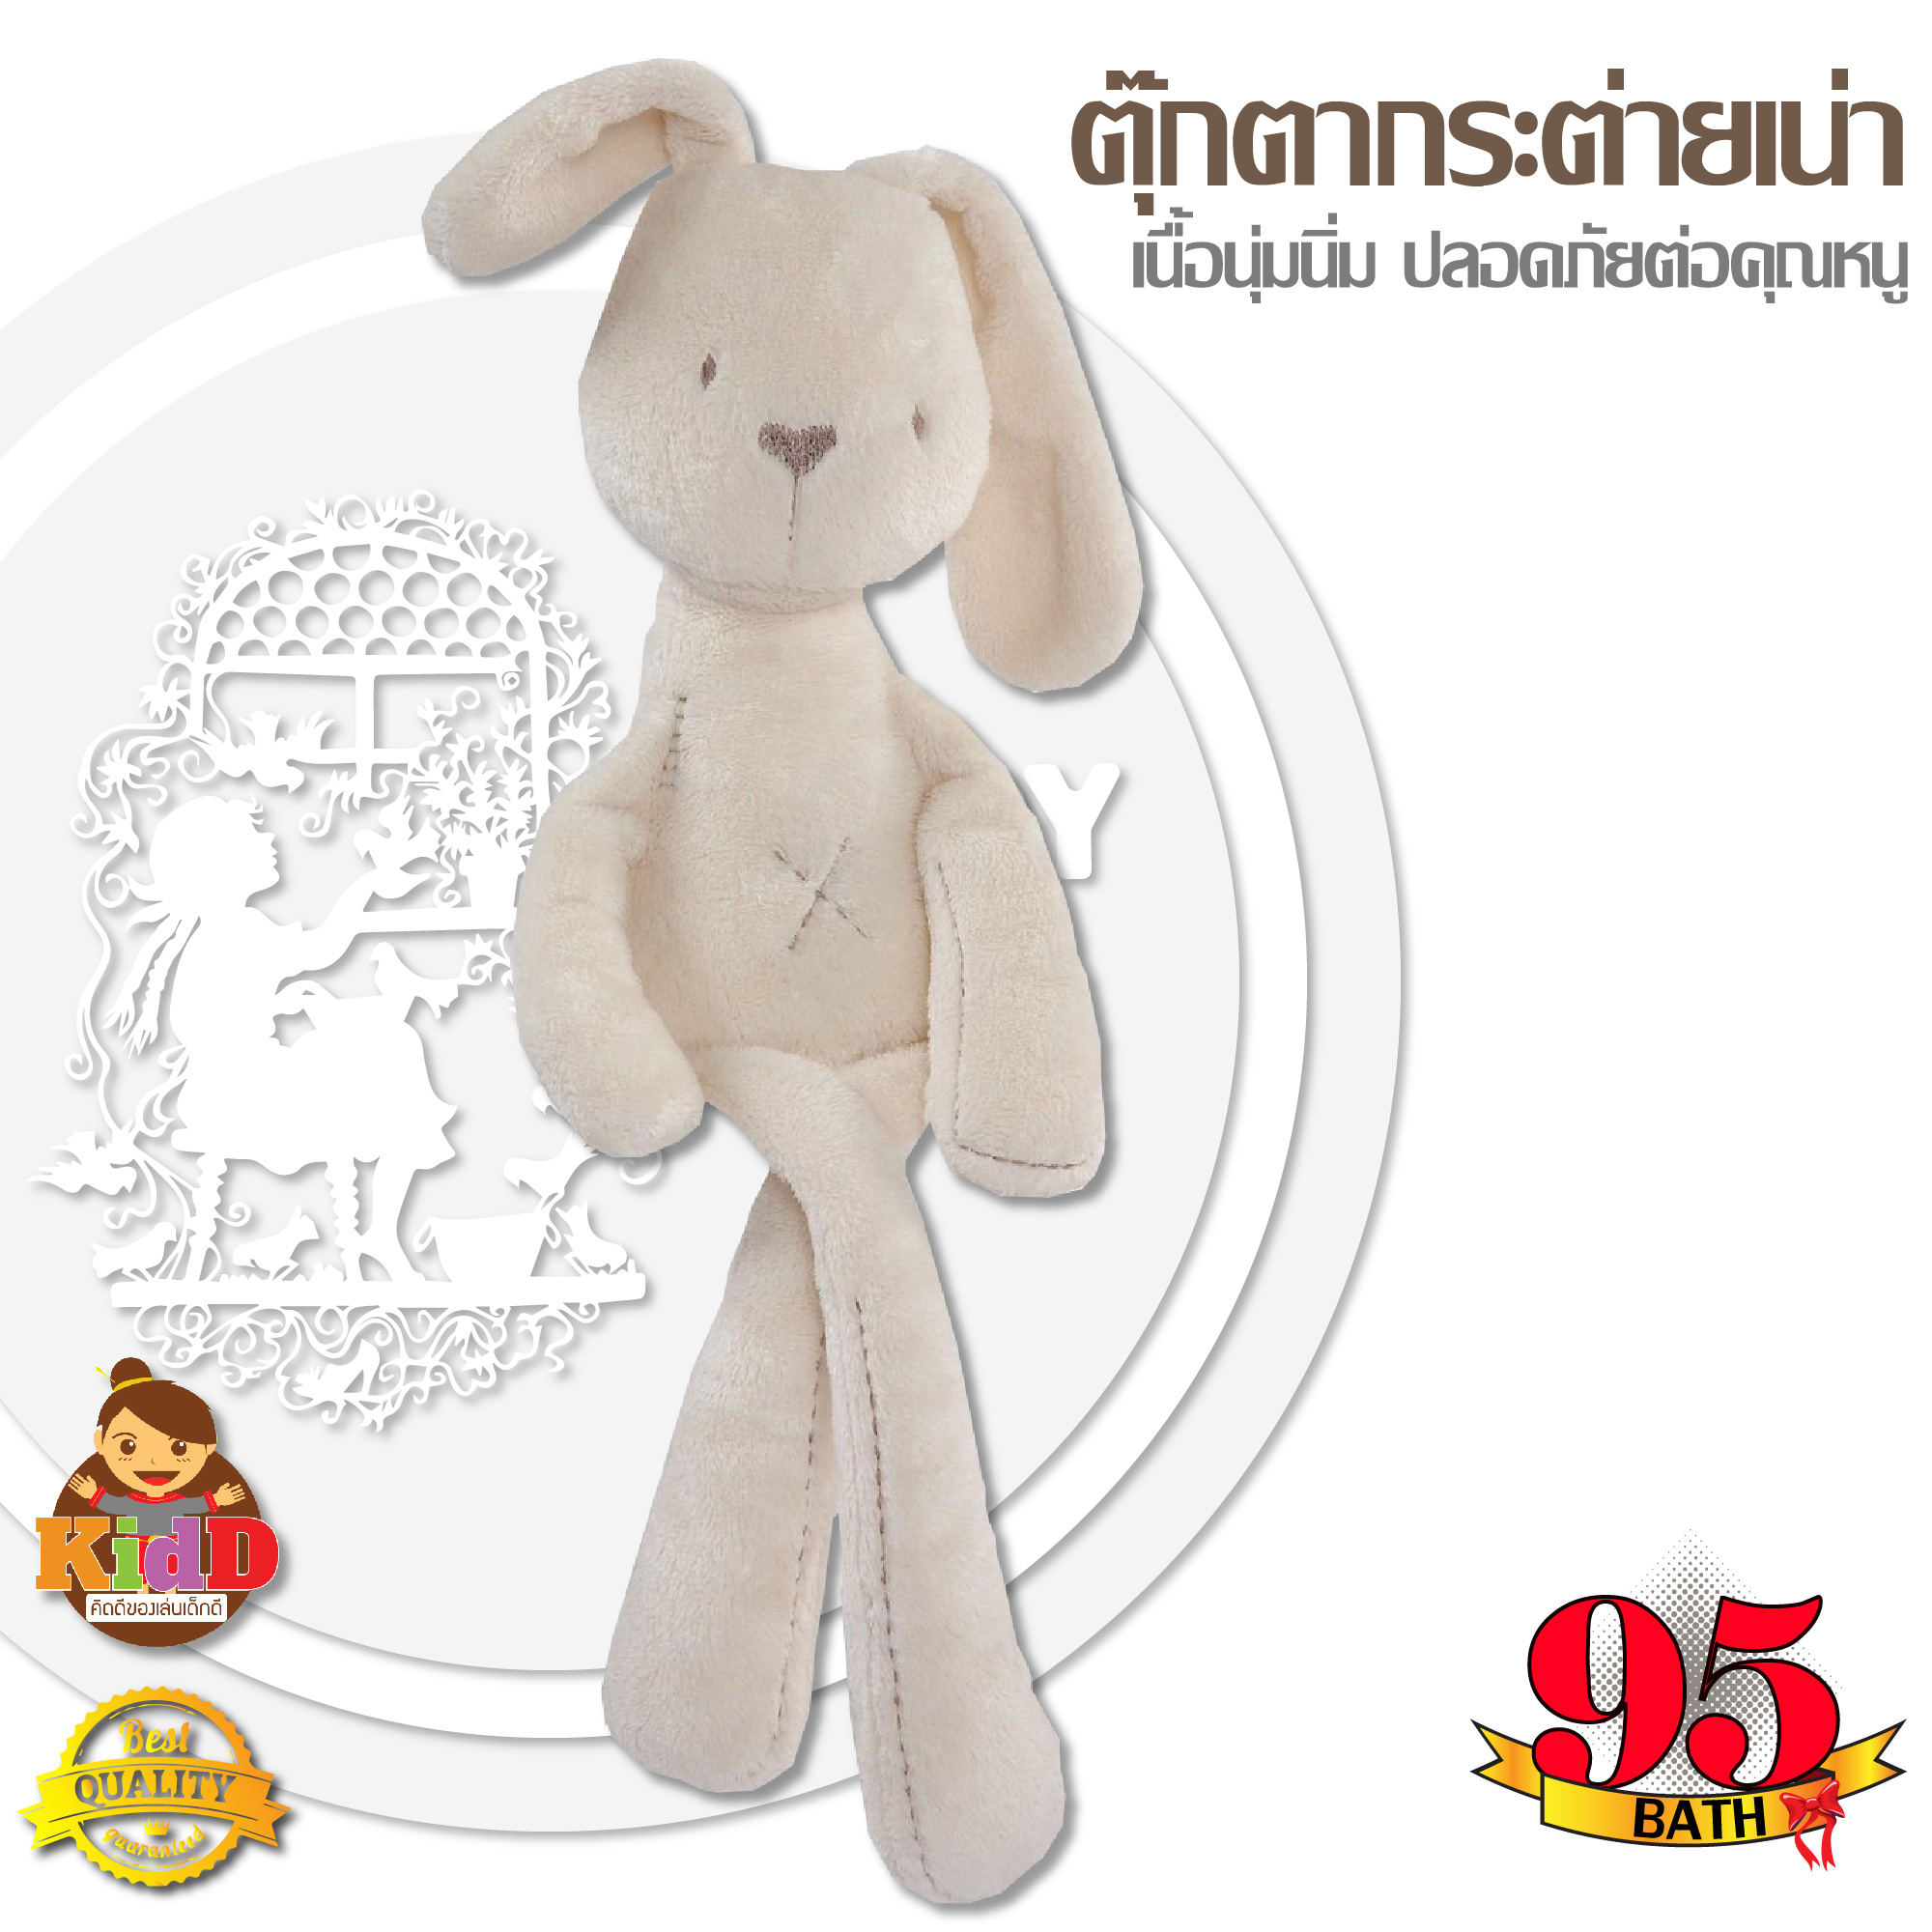 ตุ๊กตาเน่า ตุ๊กตากระต่ายเน่า ตุ๊กตาหมี ตุ๊กตากระต่ายใส่เอี้ยม เนื้อผ้านุ่มนิ่ม ขนาดประมาณ 40 cm สินค้าพร้อมส่ง kiddtoy